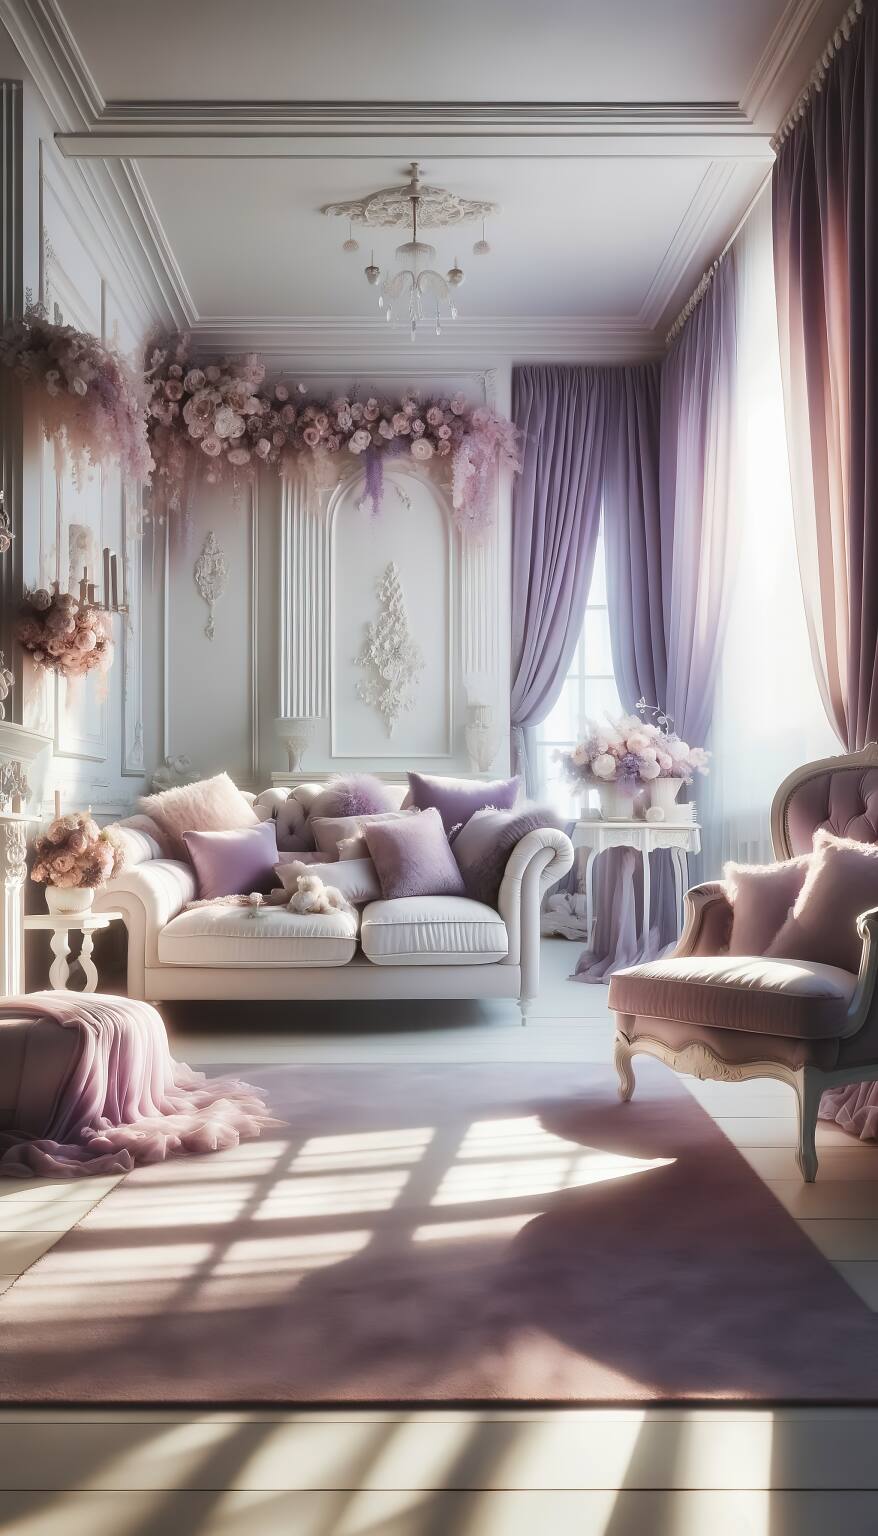 Ein Ruhiges Und Romantisches Wohnzimmer In Lavendel- Und Weißtönen Mit Einem Gemütlichen Sofa, Weichen Sesseln Und Einem Eleganten Couchtisch, Die Eine Atmosphäre Der Ruhe Und Des Glücks Vermitteln.